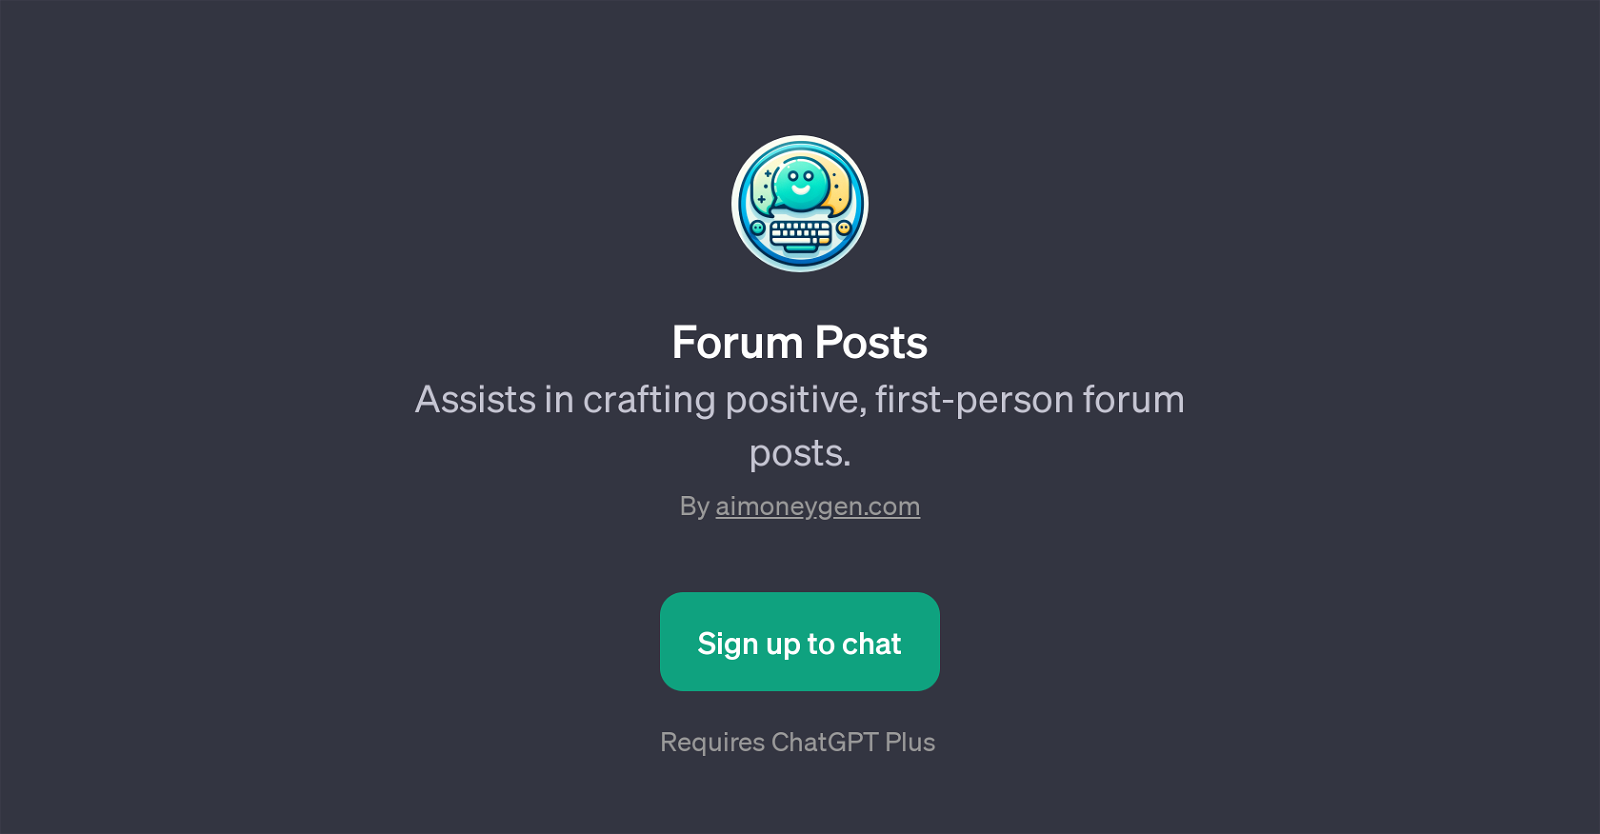 Forum Posts website